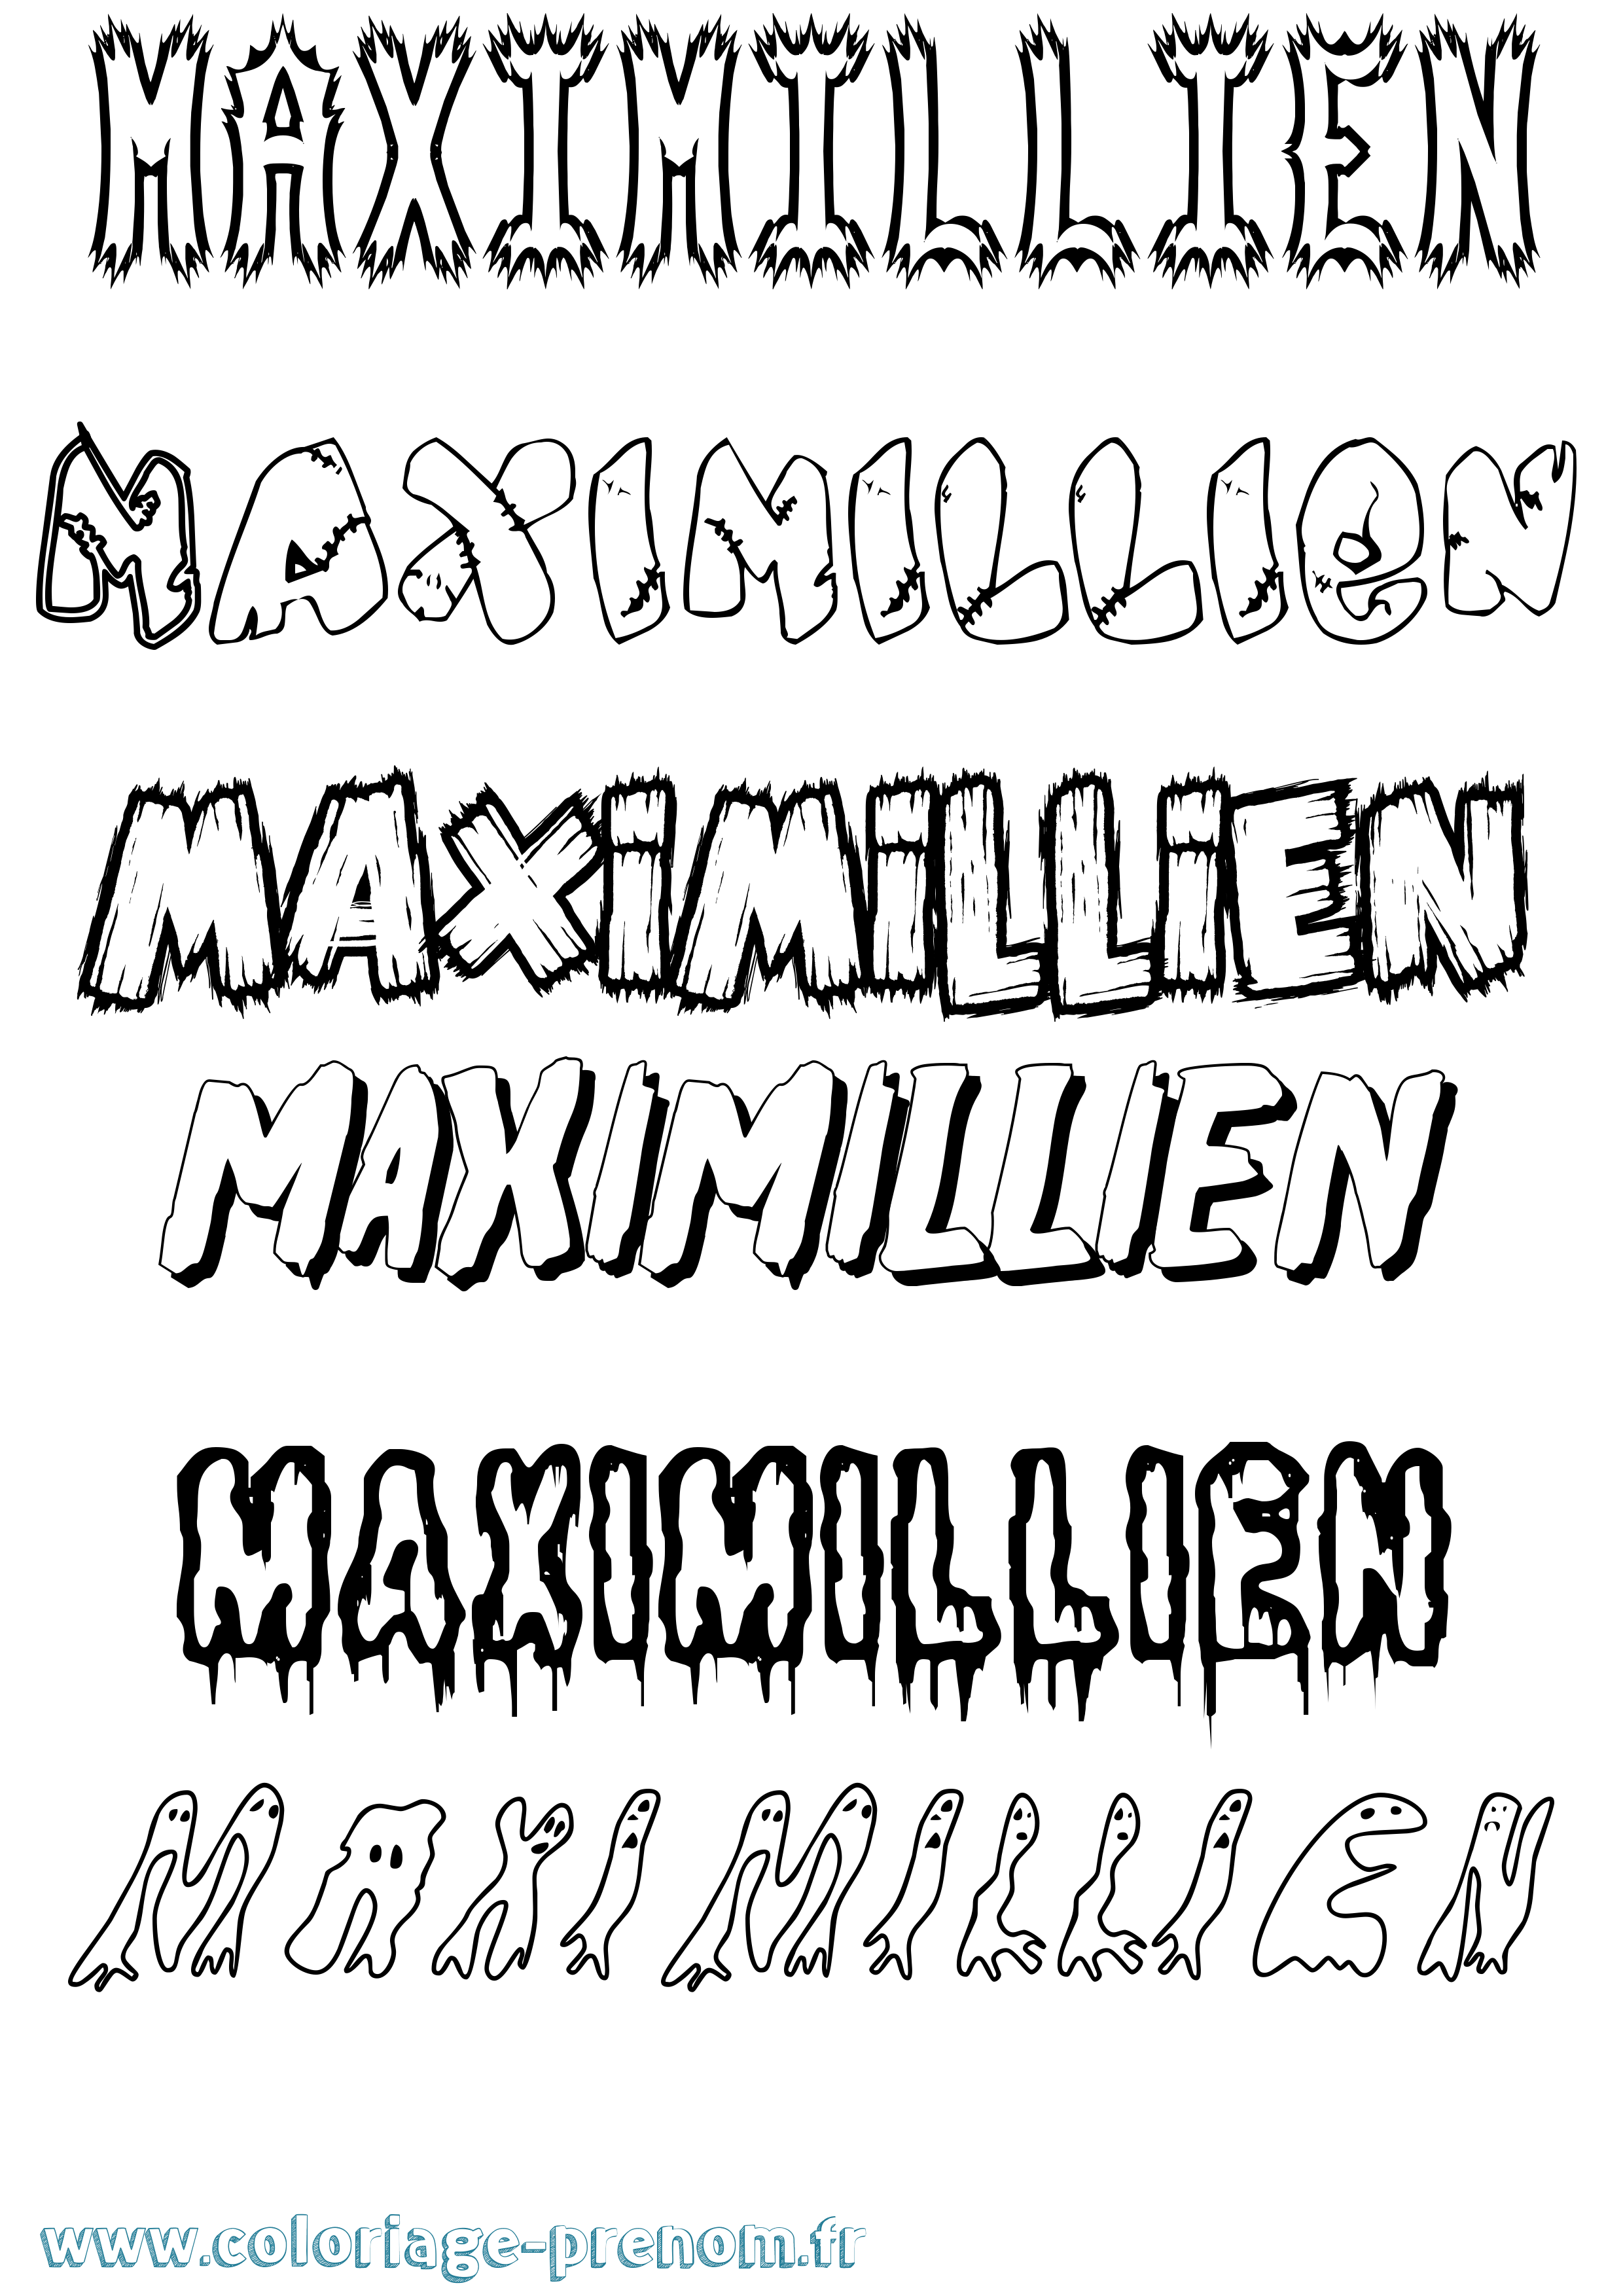 Coloriage prénom Maximillien Frisson